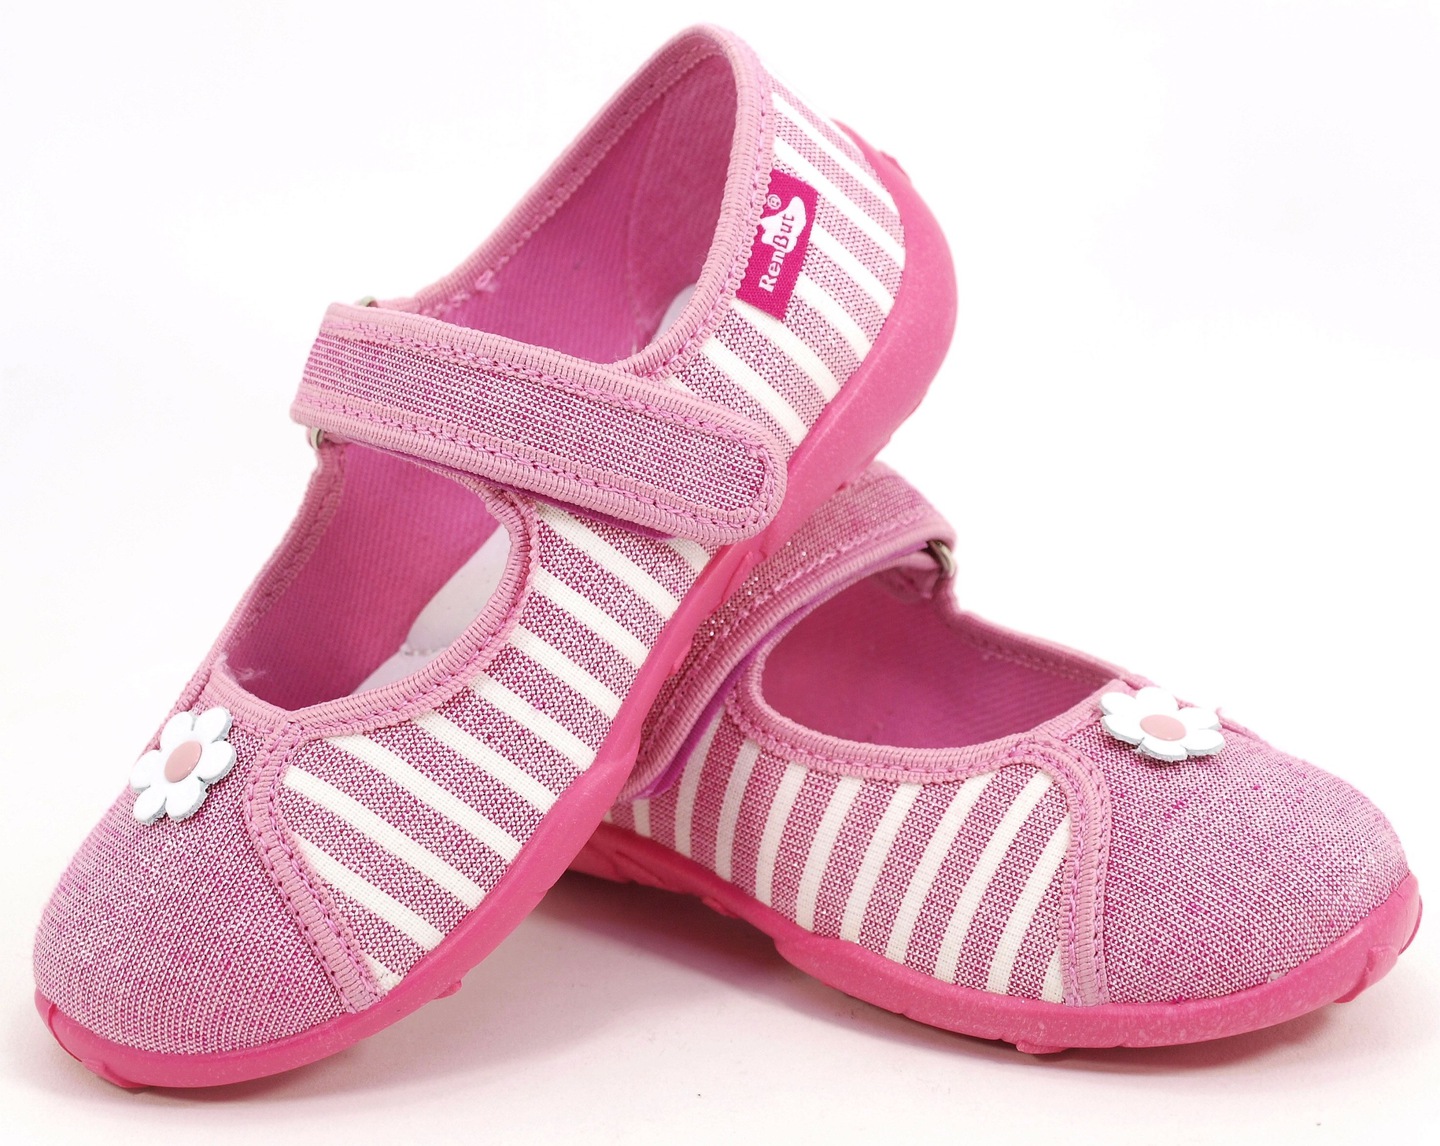 Pantofi fetite, din material textil, roz cu scai, cu floricel alb